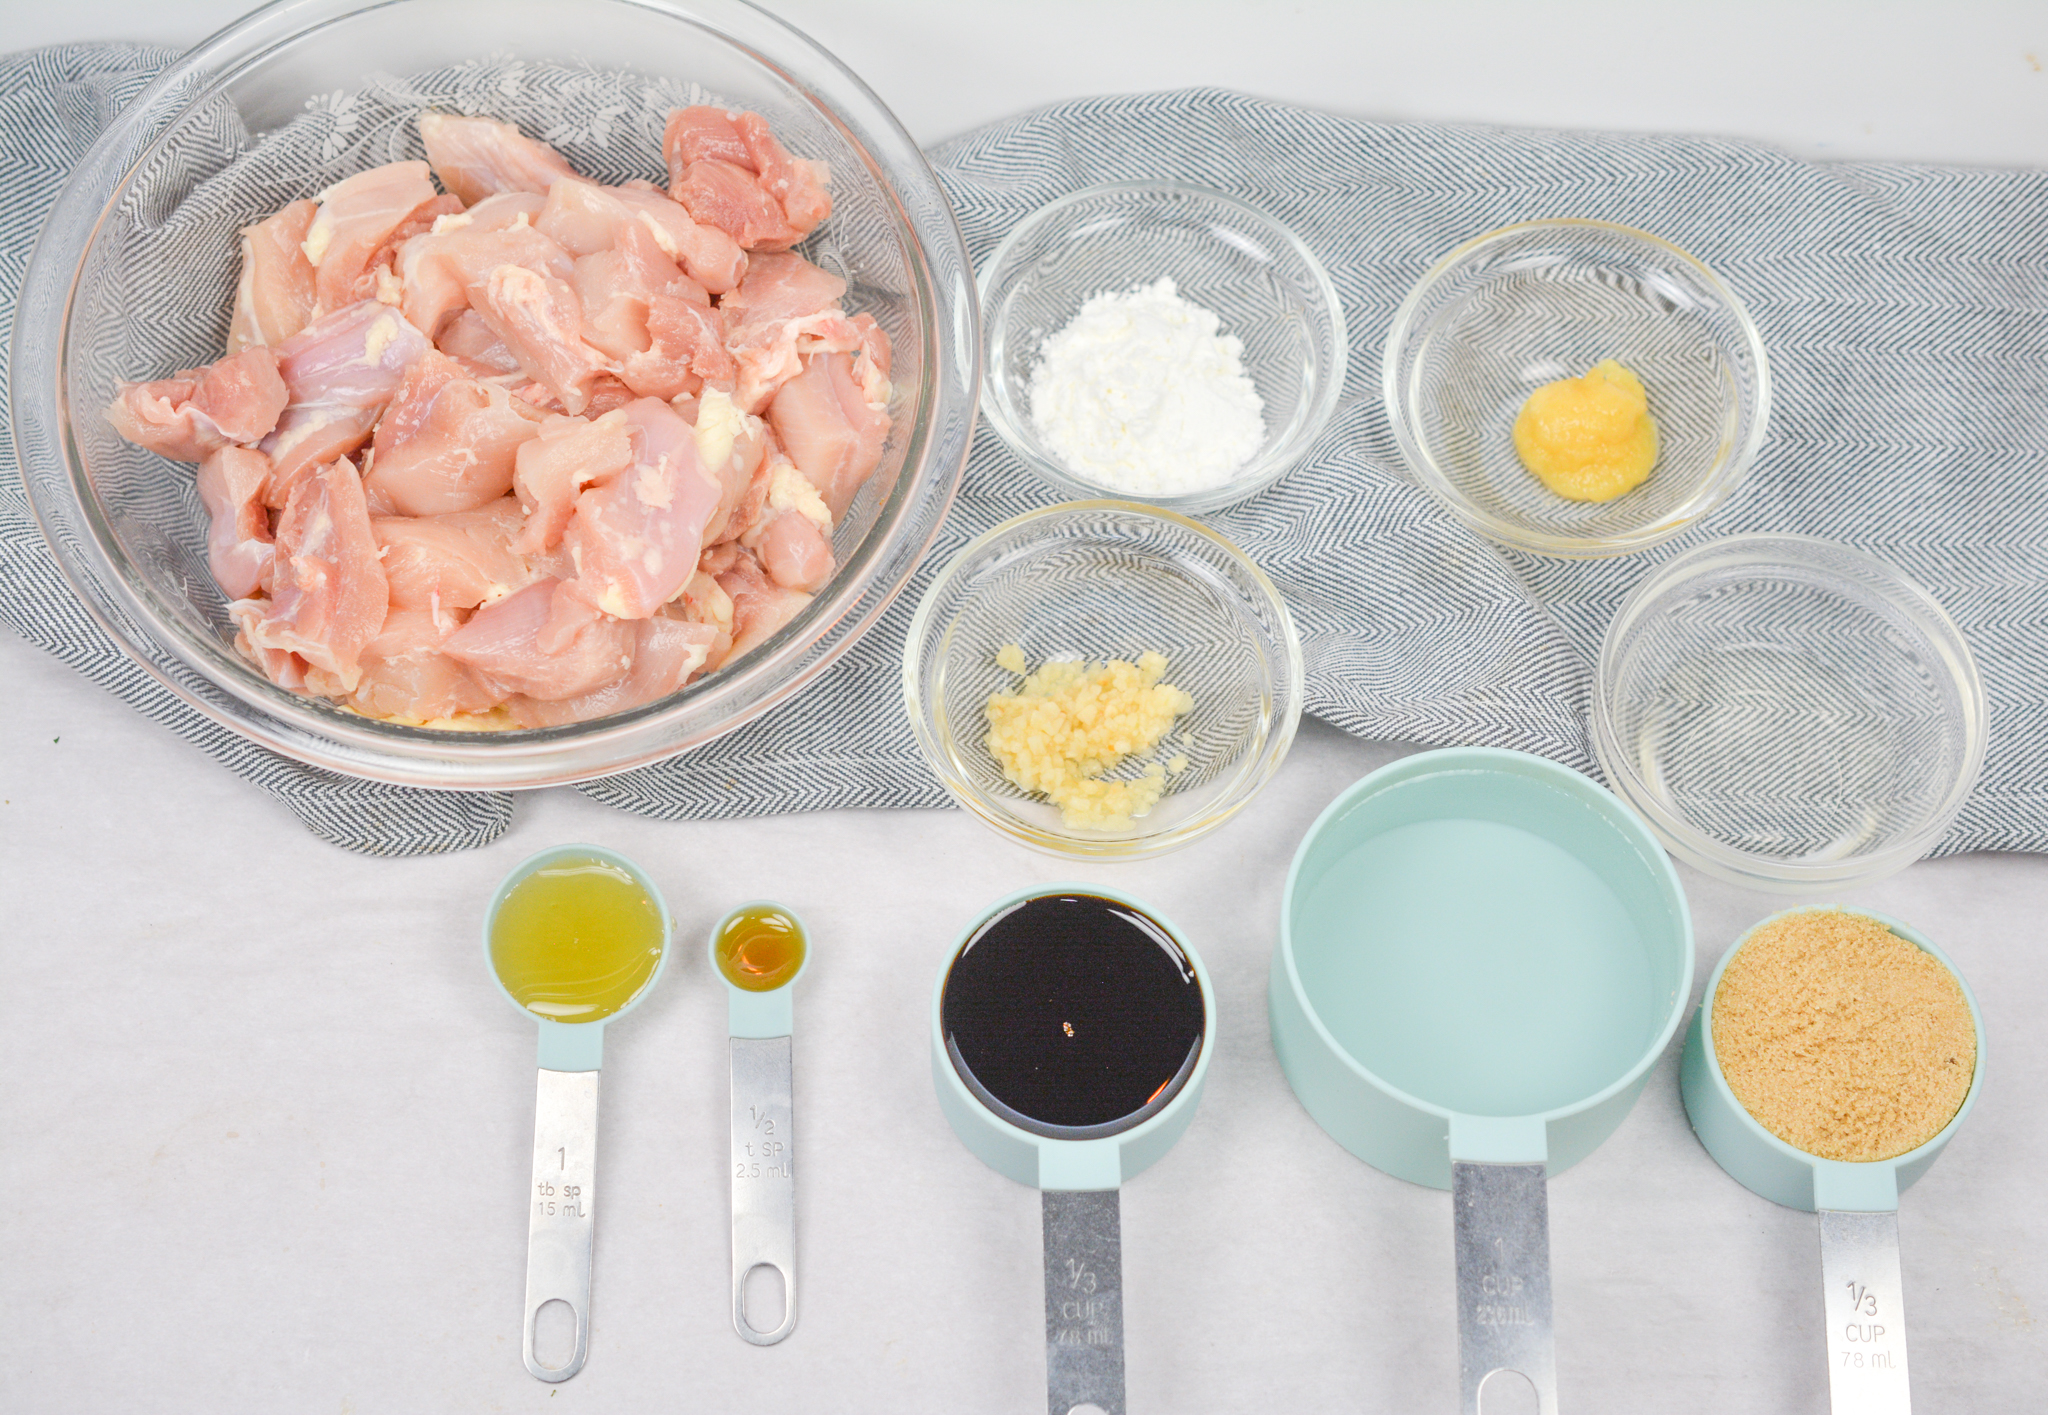 Grilled Teriyaki Chicken Skewers Ingredients